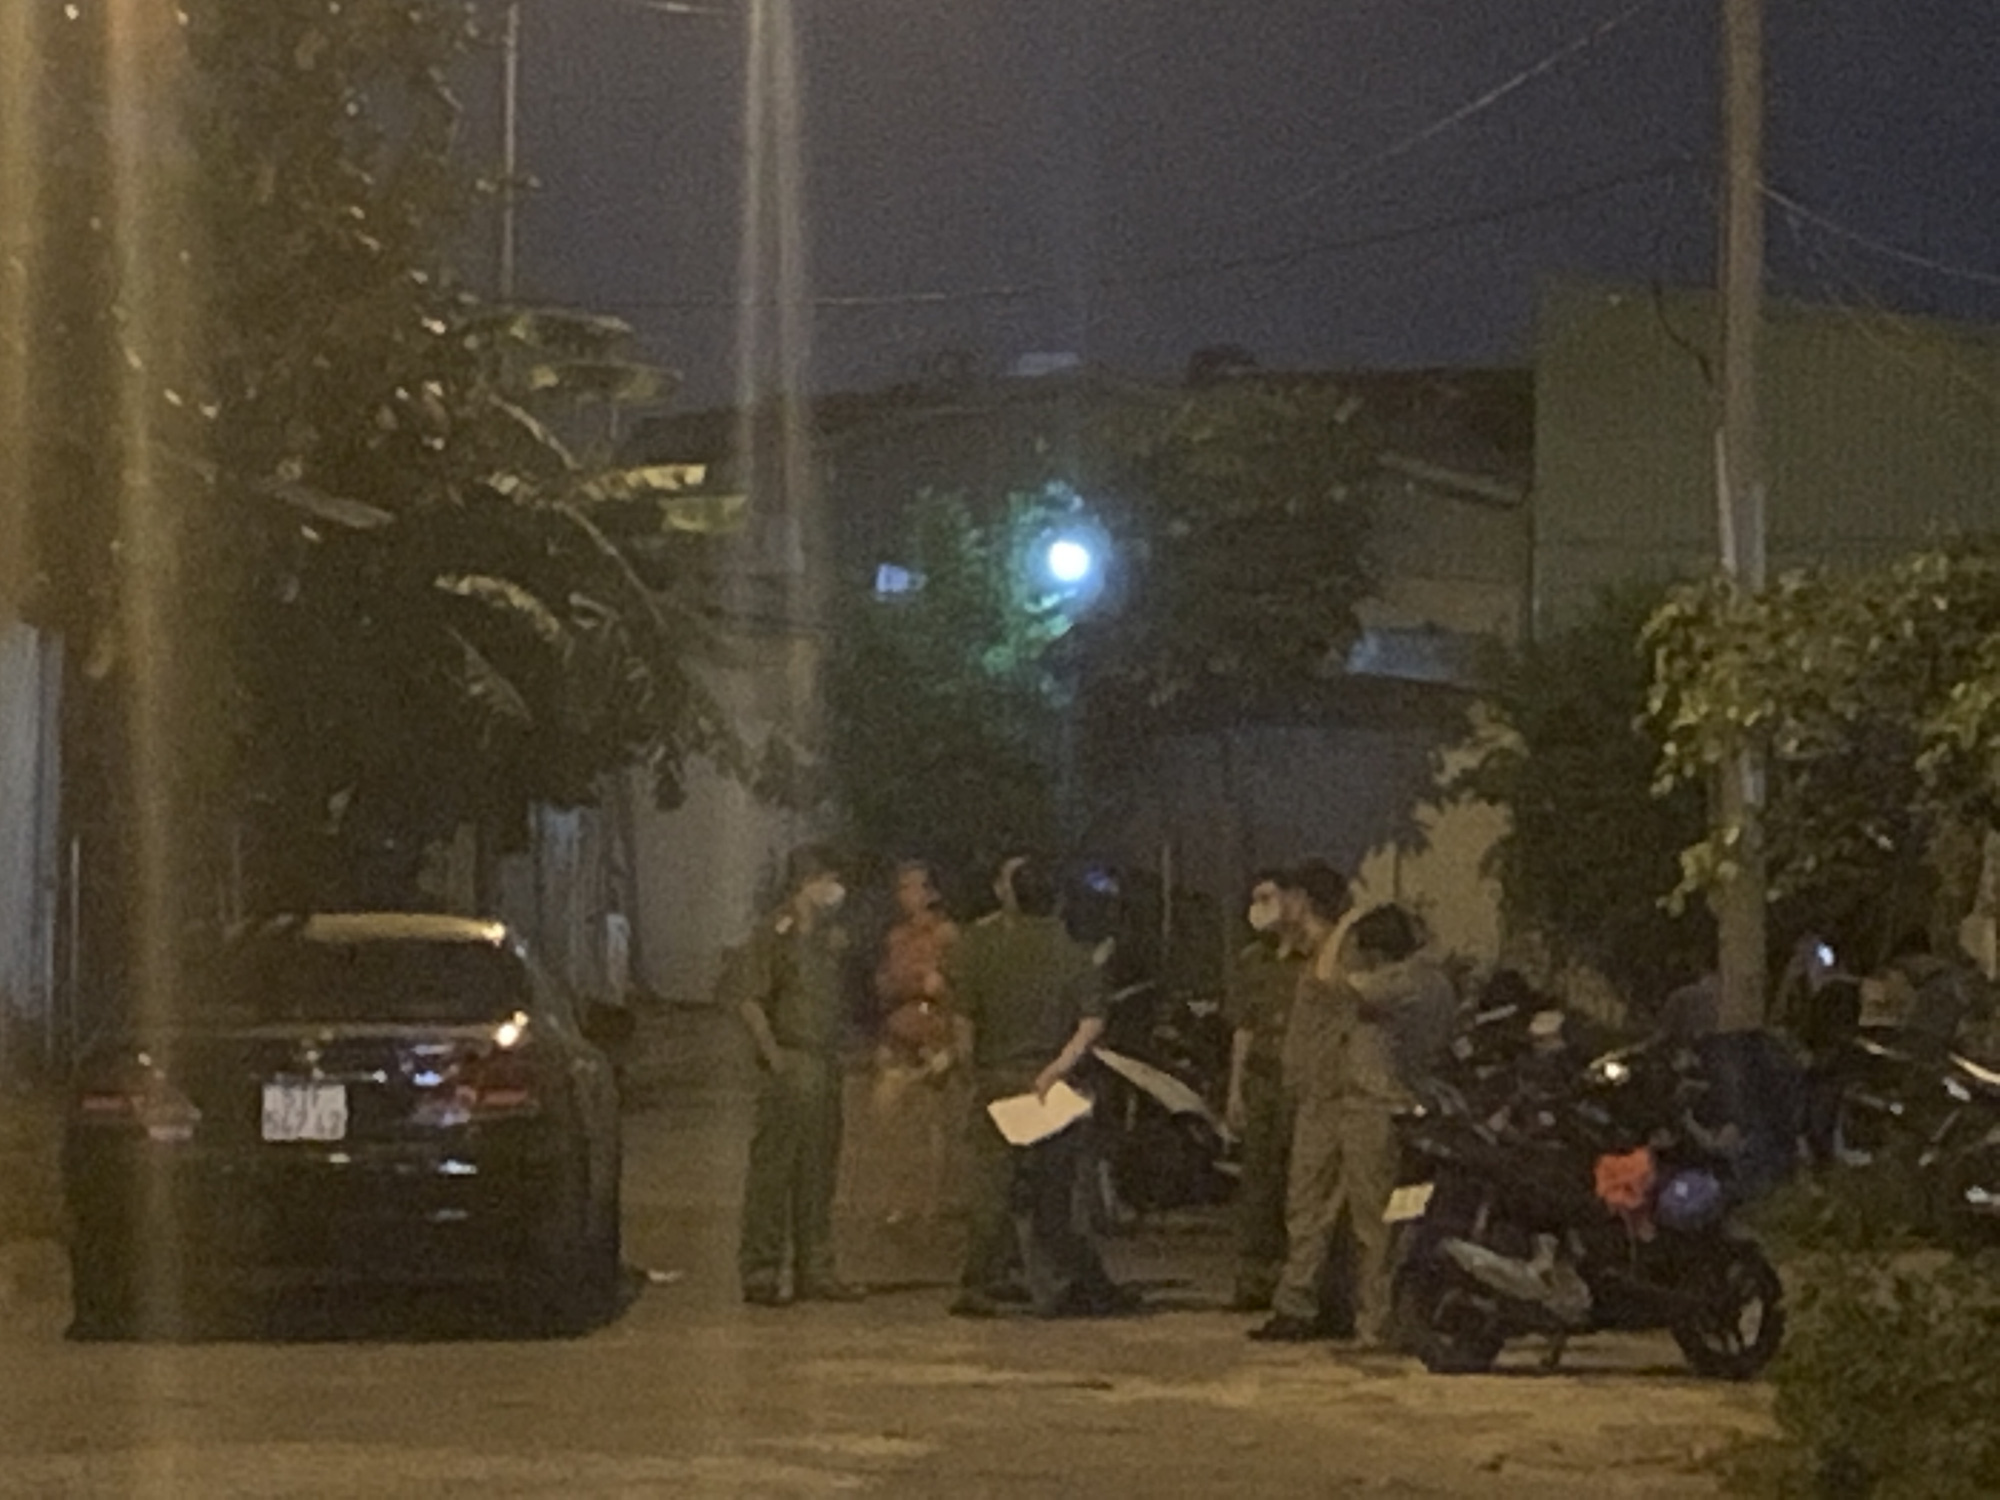 Vụ người phụ nữ bán dâm bị sát hại, cướp tài sản trong khách sạn ở Sài Gòn: Công an phát thông báo truy tìm nghi phạm - Ảnh 4.